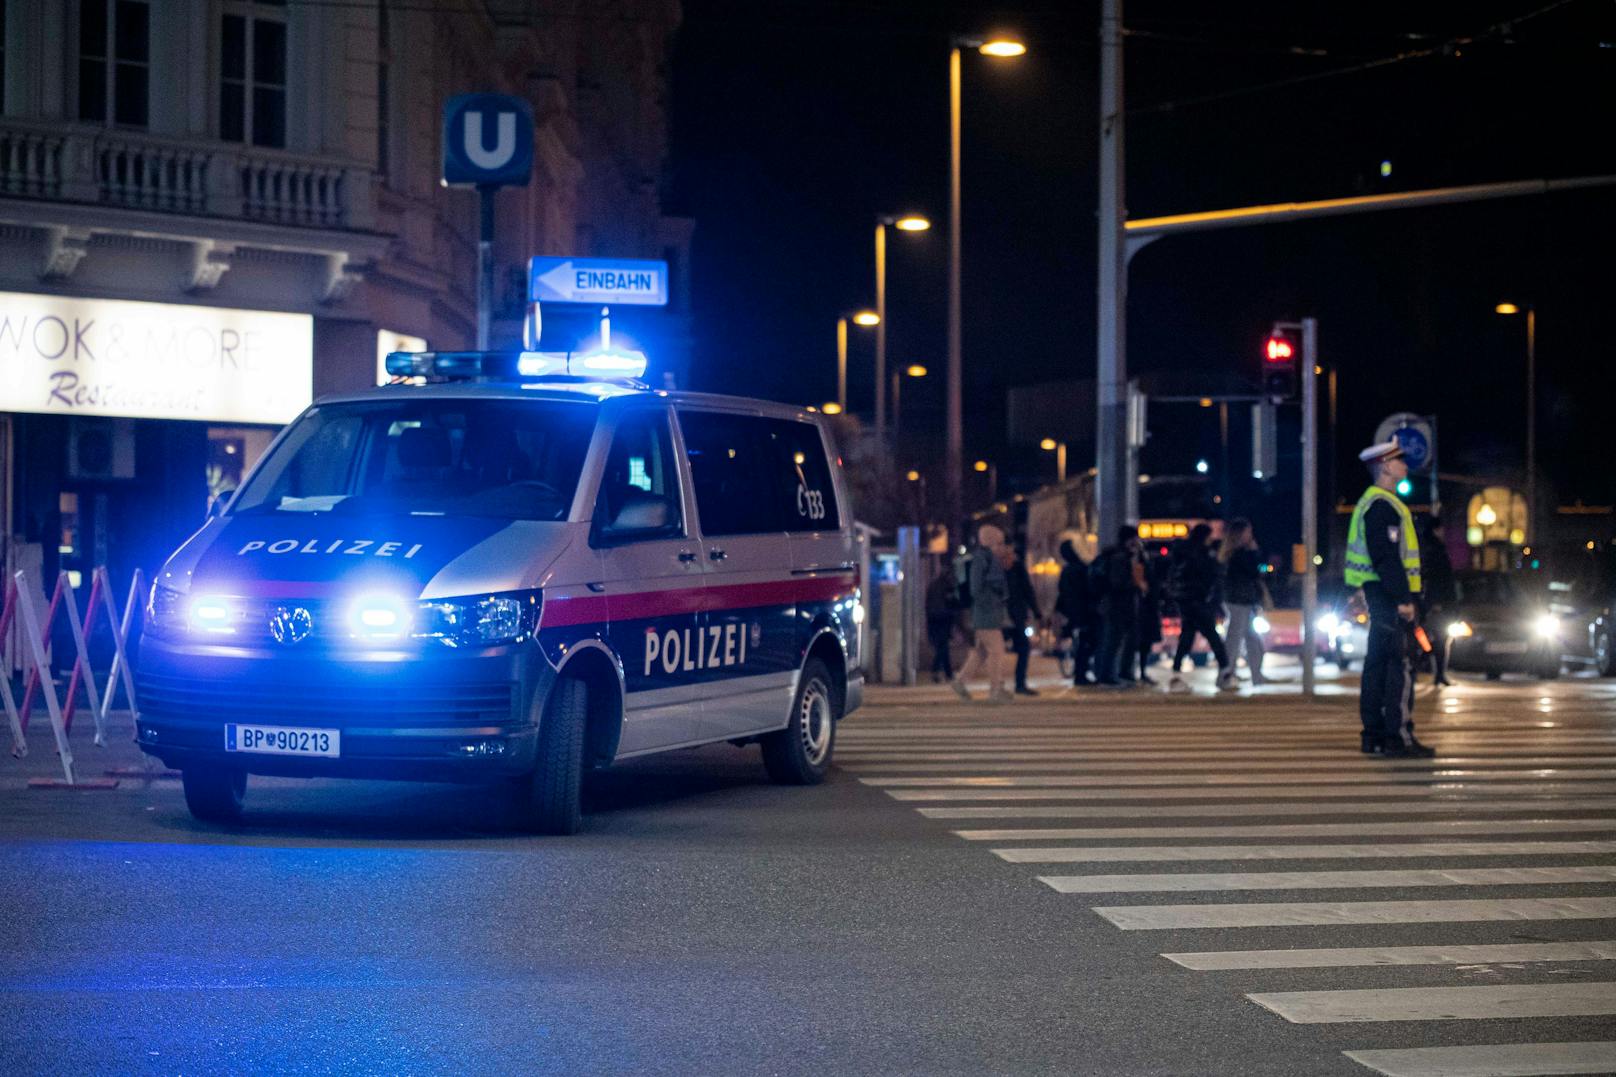 Ein Polizeifahrzeug in Wien im Einsatz. In der Leopoldstadt entdeckten die Beamten eine Leiche.